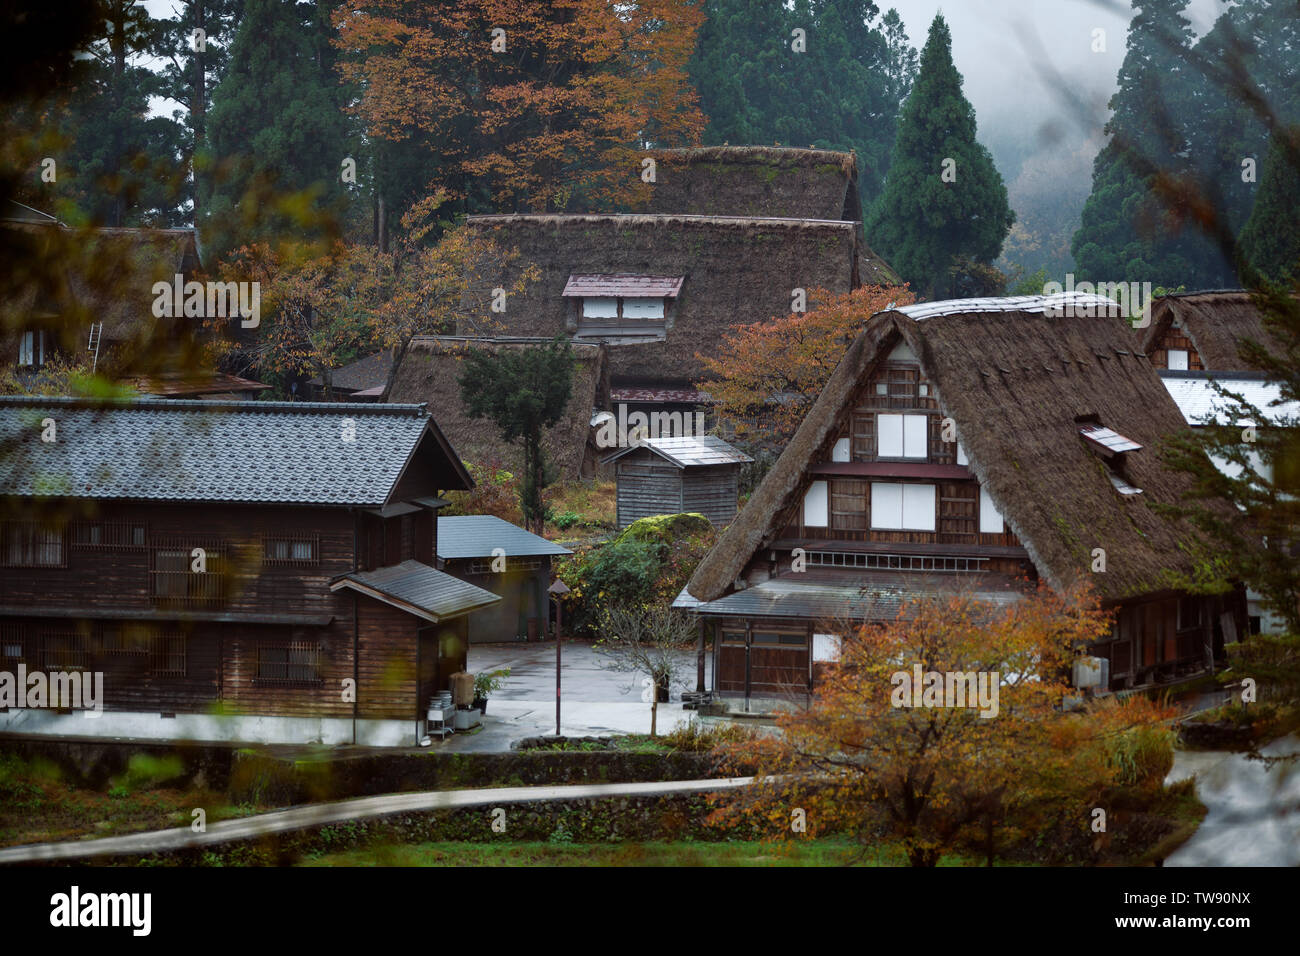 Licence et estampes sur MaximImages.com - Ainokura, village japonais avec des maisons rurales traditionnelles Gassho zukiri. Toyama, Japon. Banque D'Images